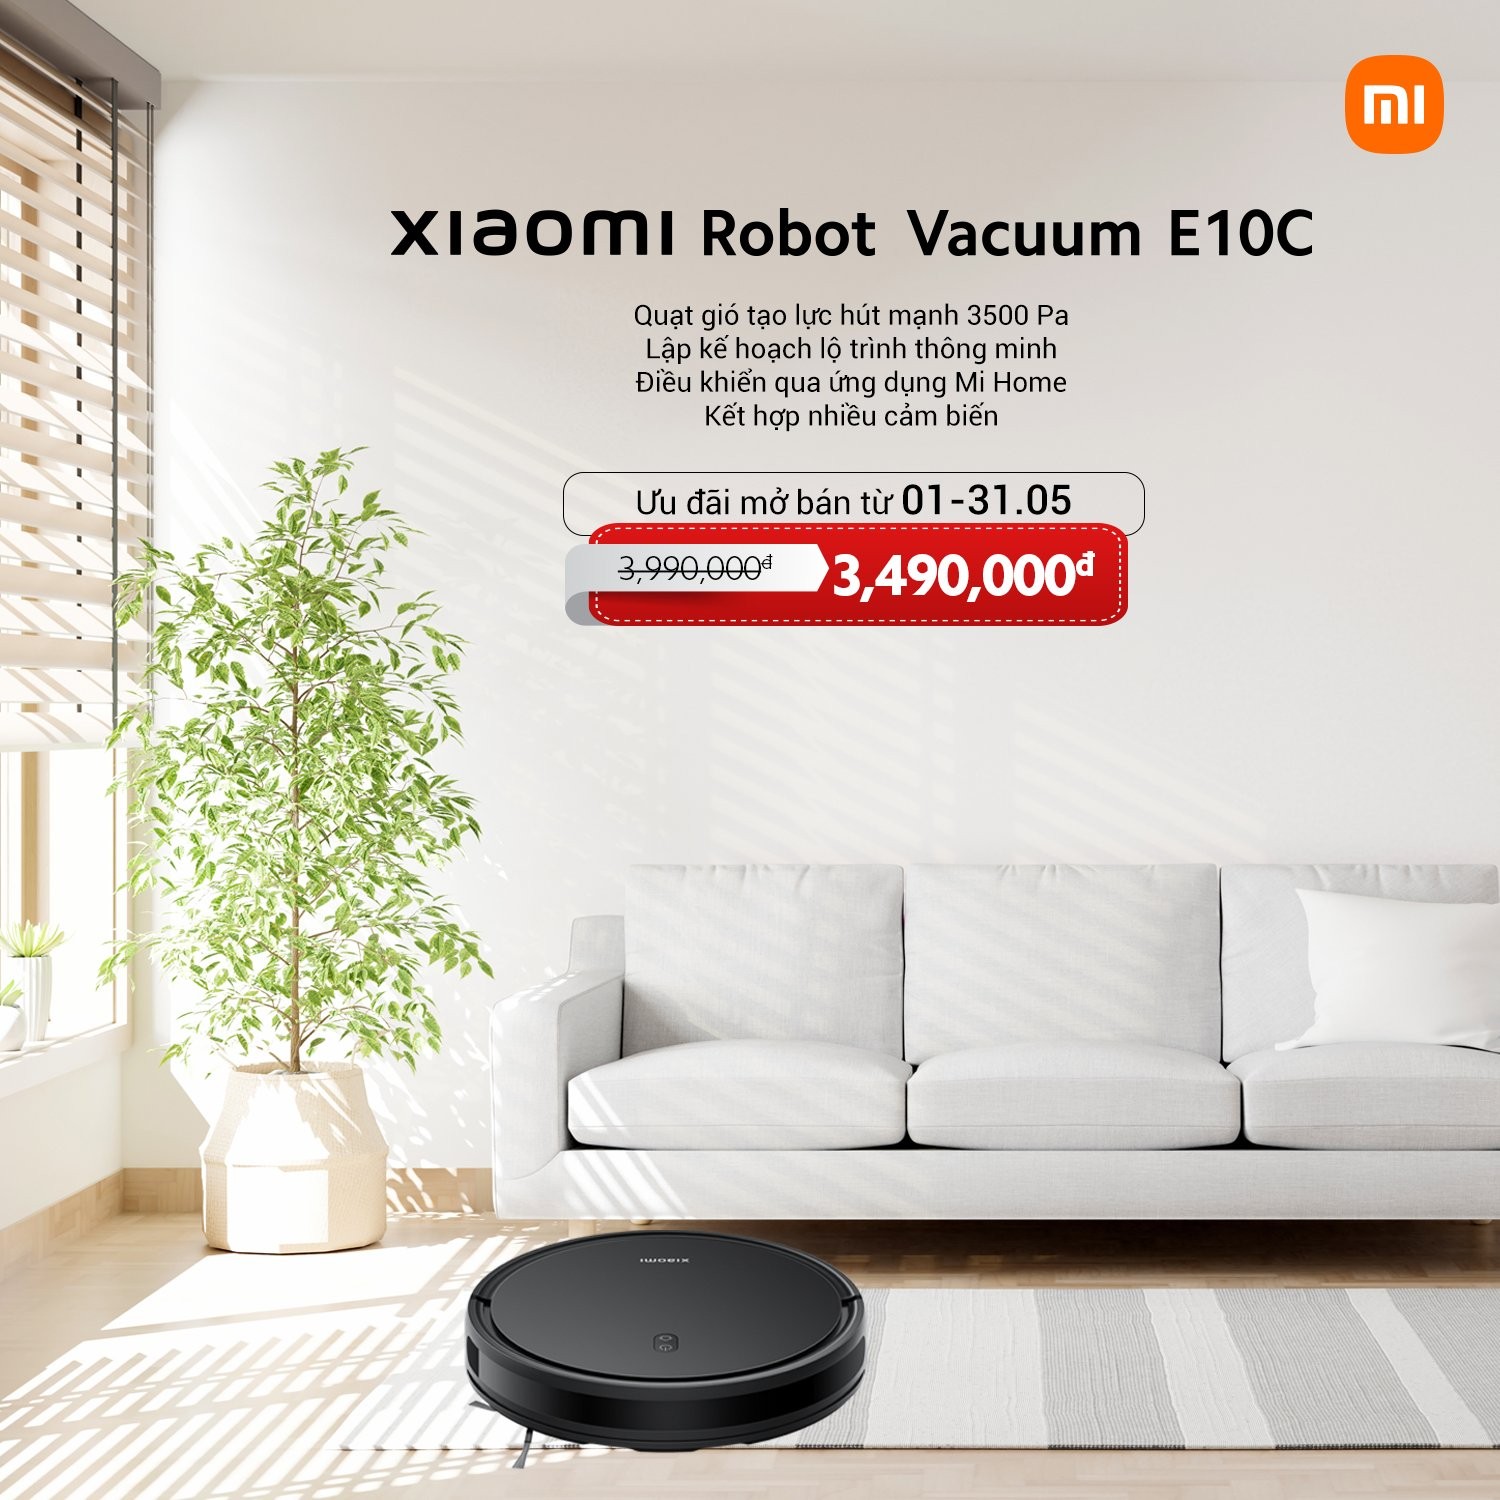 xiaomi-robot-vacuum-2-1714638566.jpg